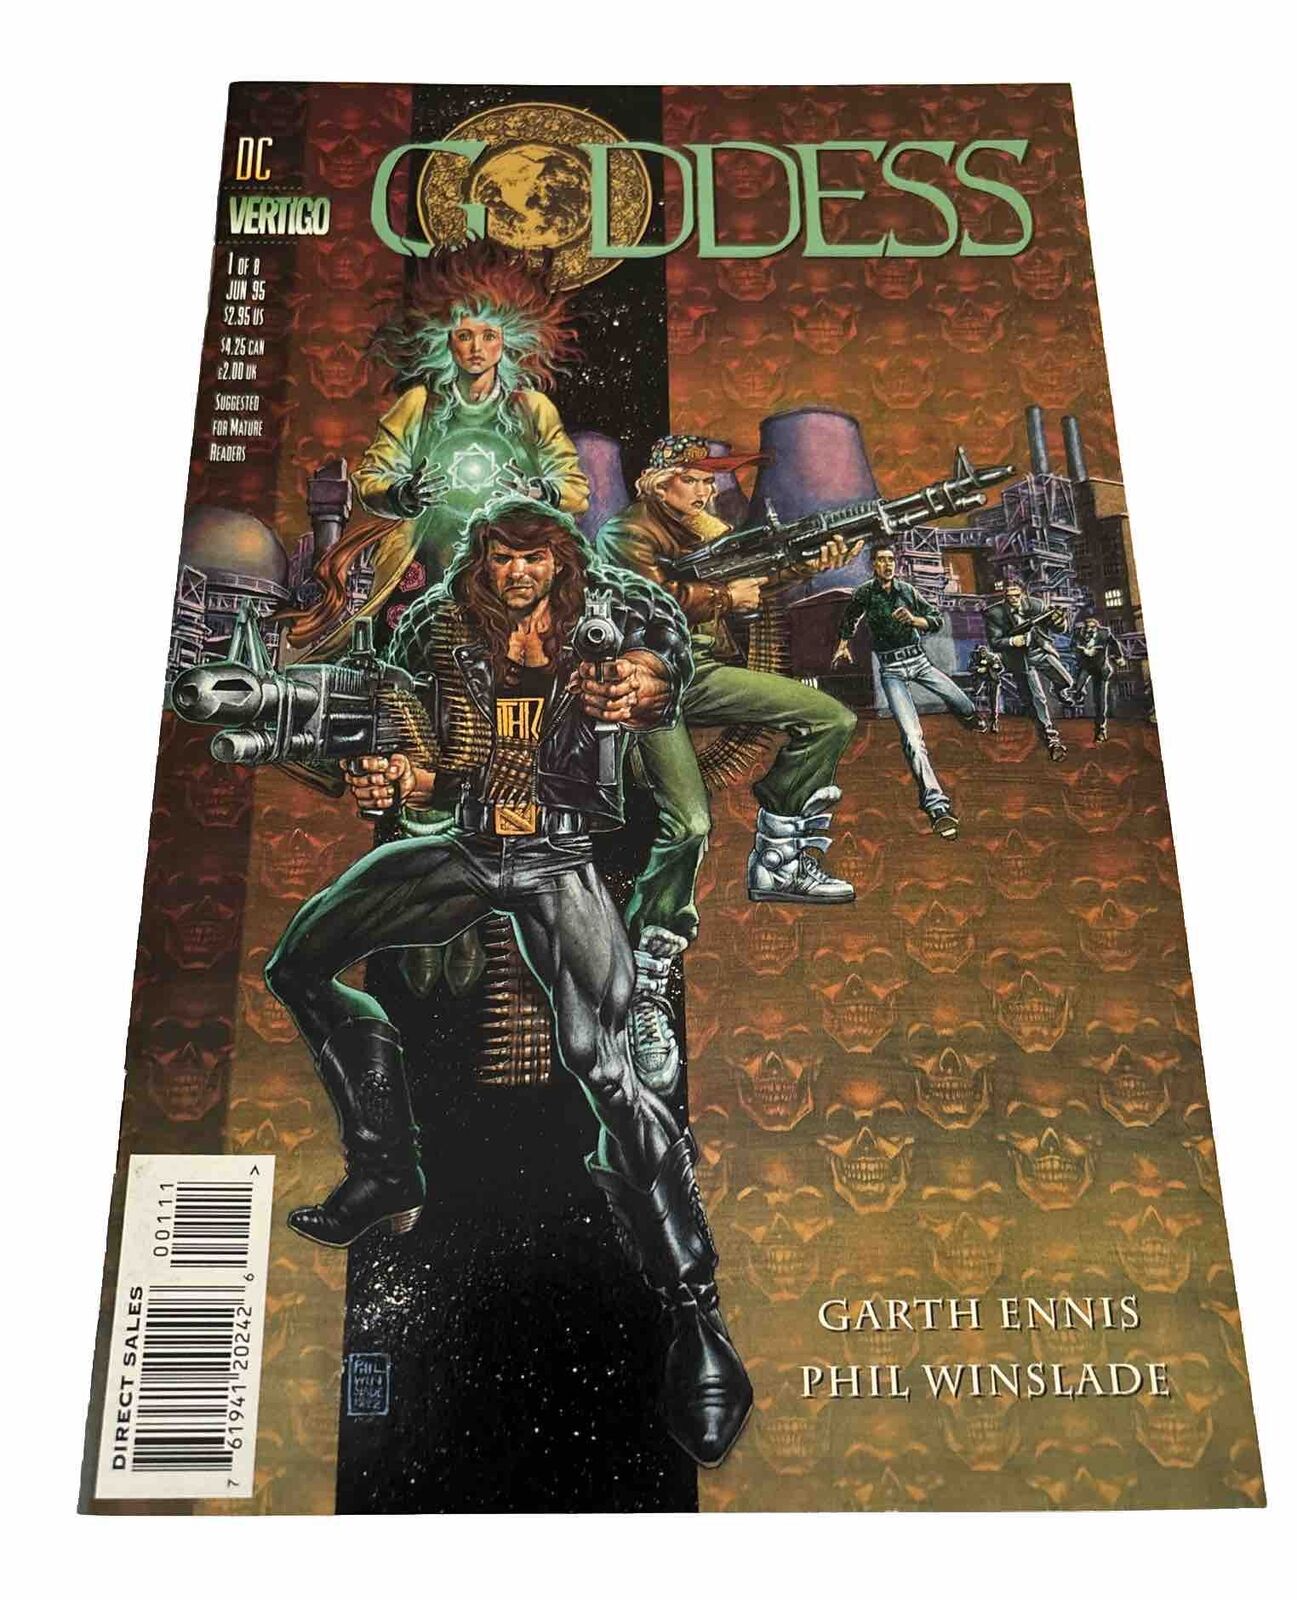 GODDESS #1 (1996) DC/Vertigo Comics VF/NM Condition (box29)